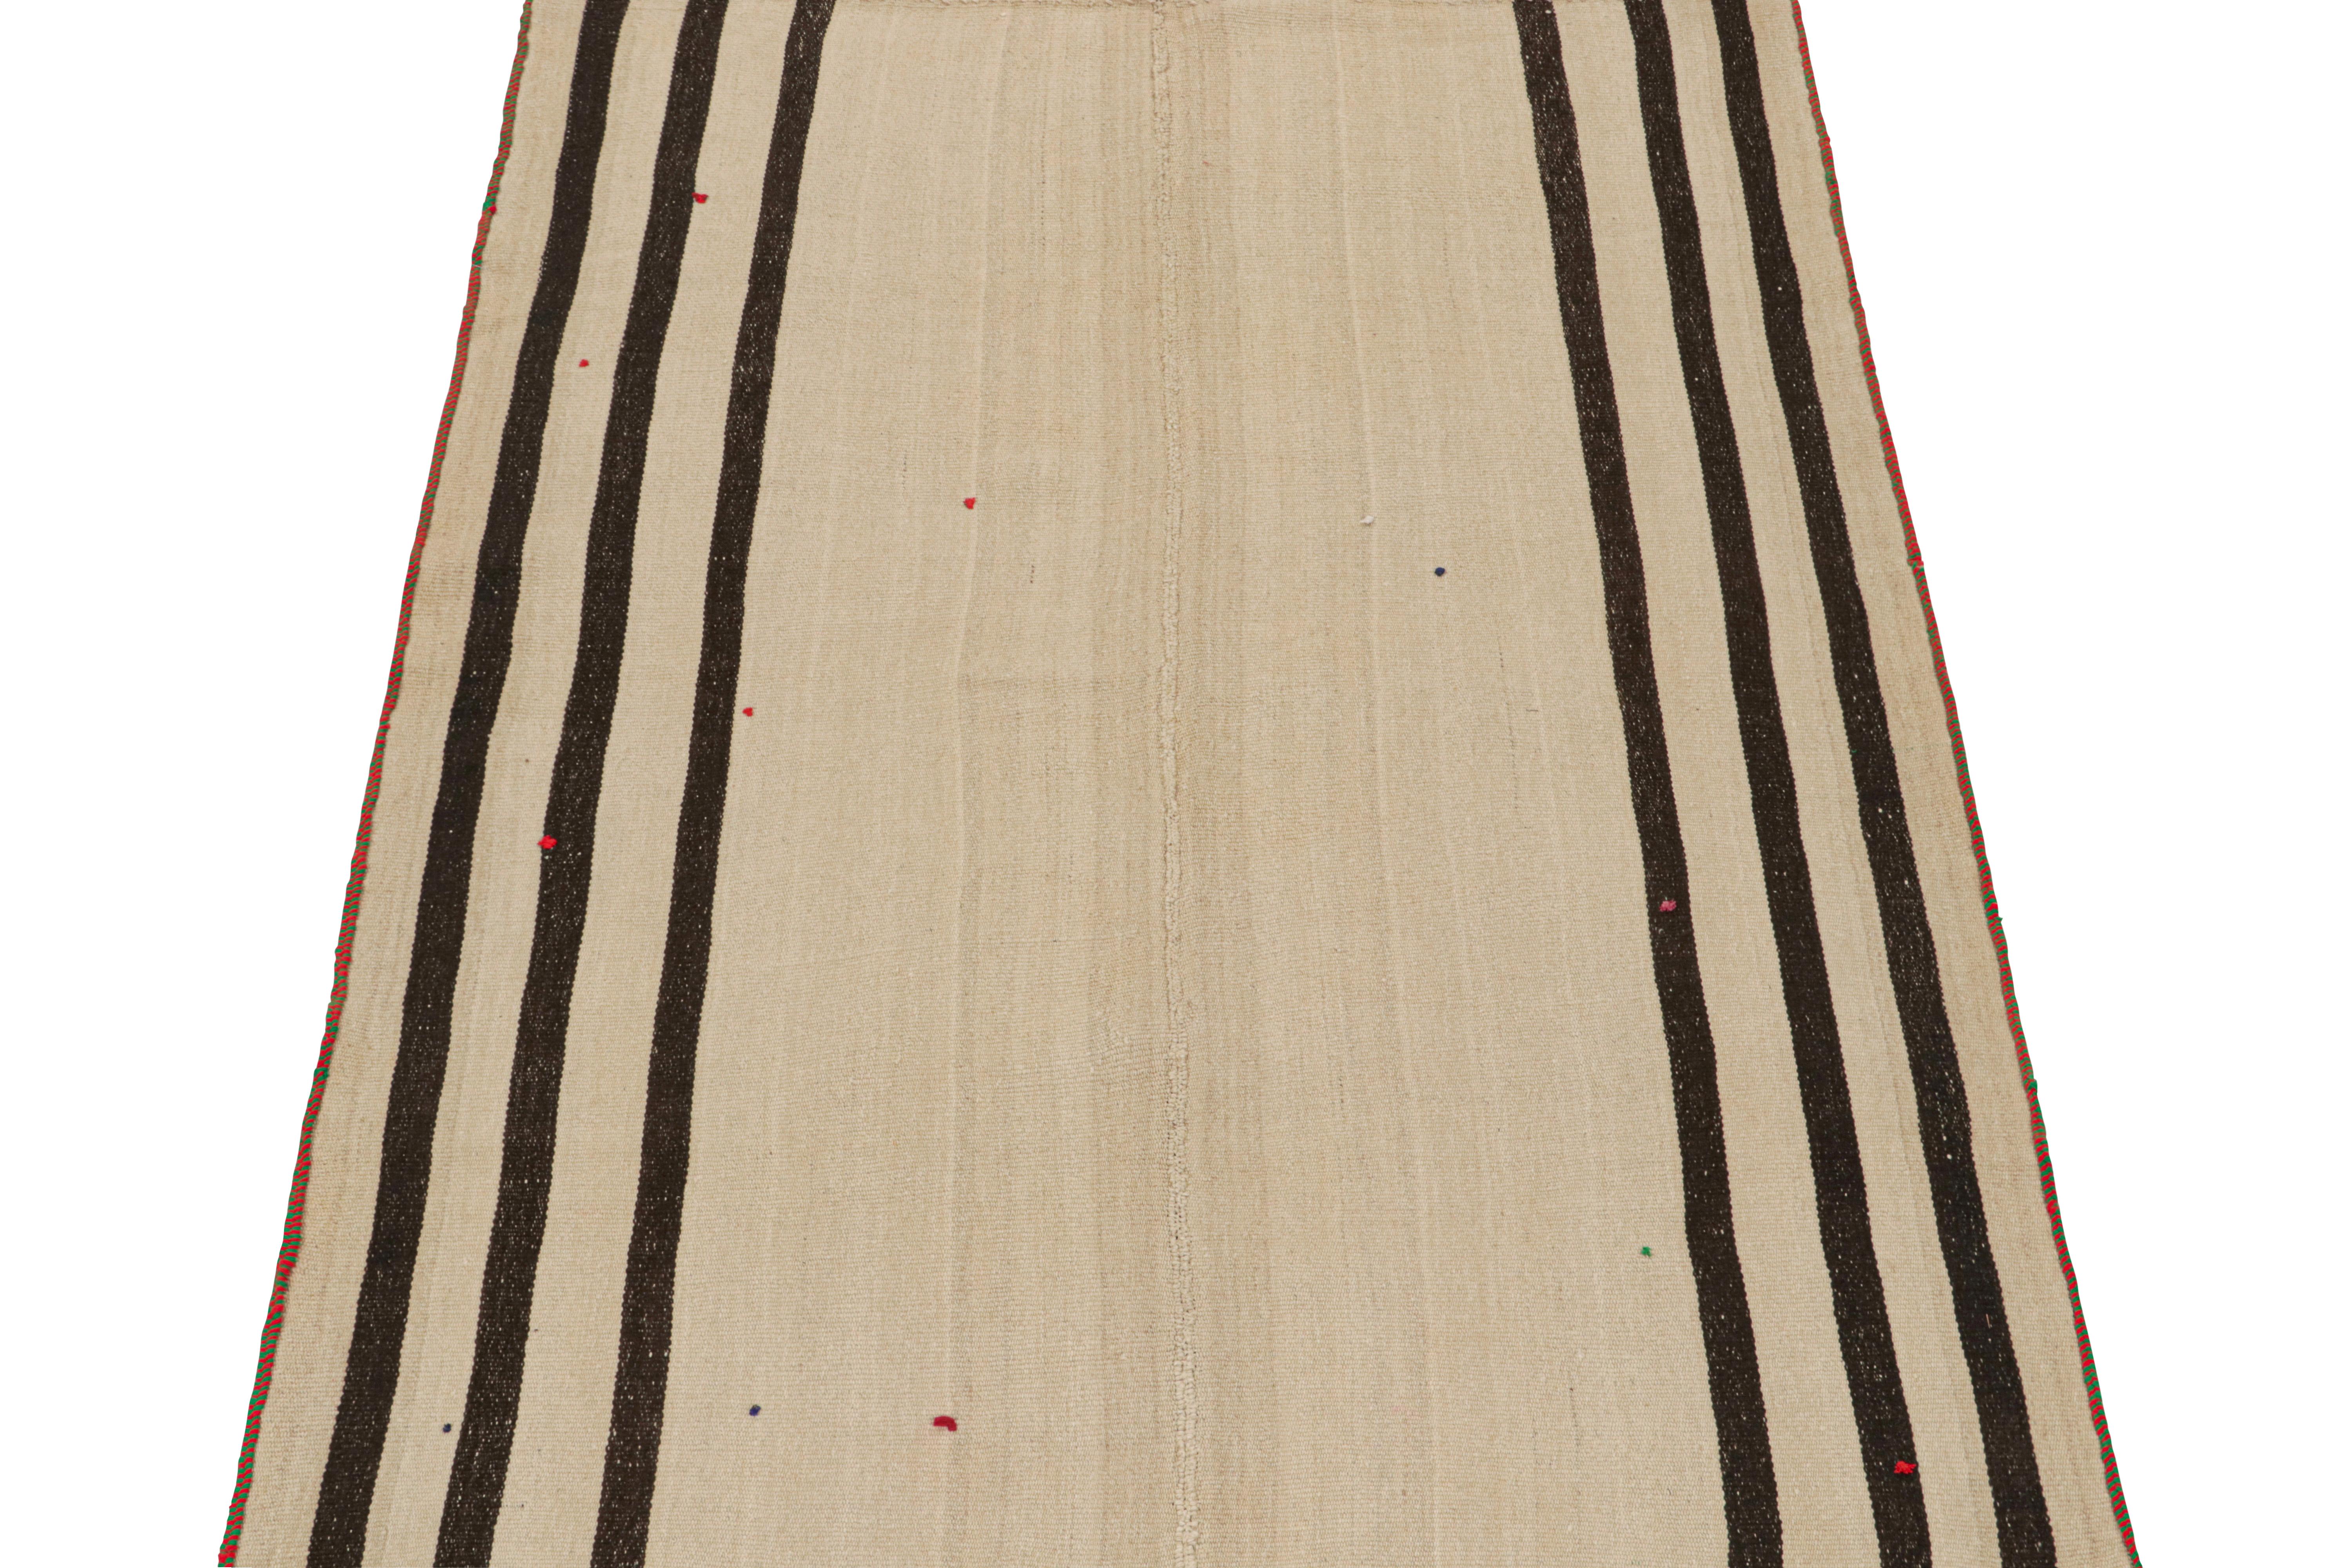 Ce Rug & Kilim Persan vintage de 5x8 est un tapis tribal du milieu du siècle, tissé à la main en laine vers 1950-1960. 

Son dessin représente très probablement un Kilim de style Jajim, une technique de tissage à plat dans laquelle plusieurs pièces